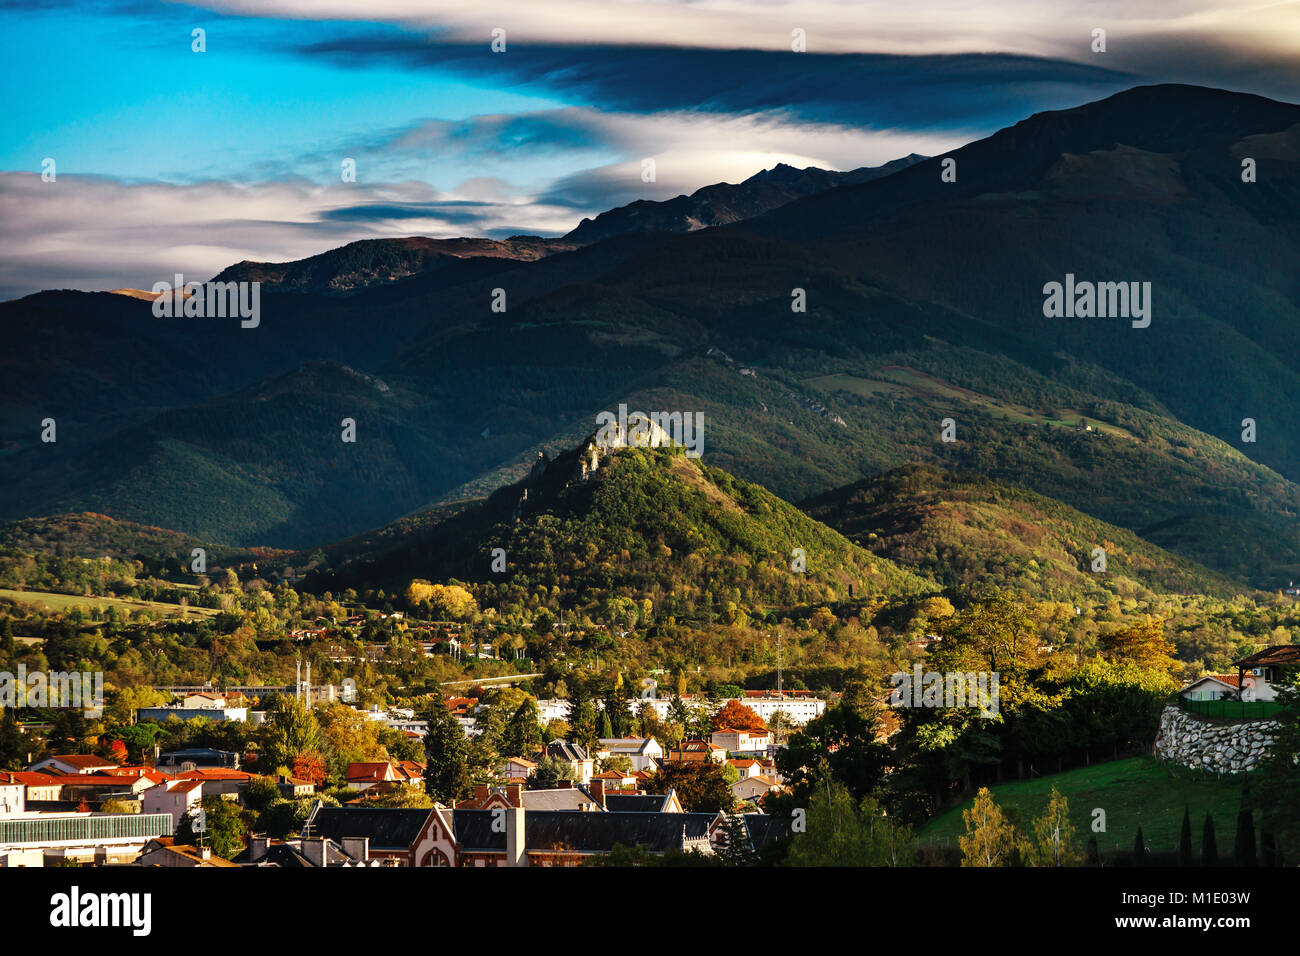 Vue de l'ancien château médiéval et belle vallée d'automne, coucher de soleil, Foix, France Banque D'Images